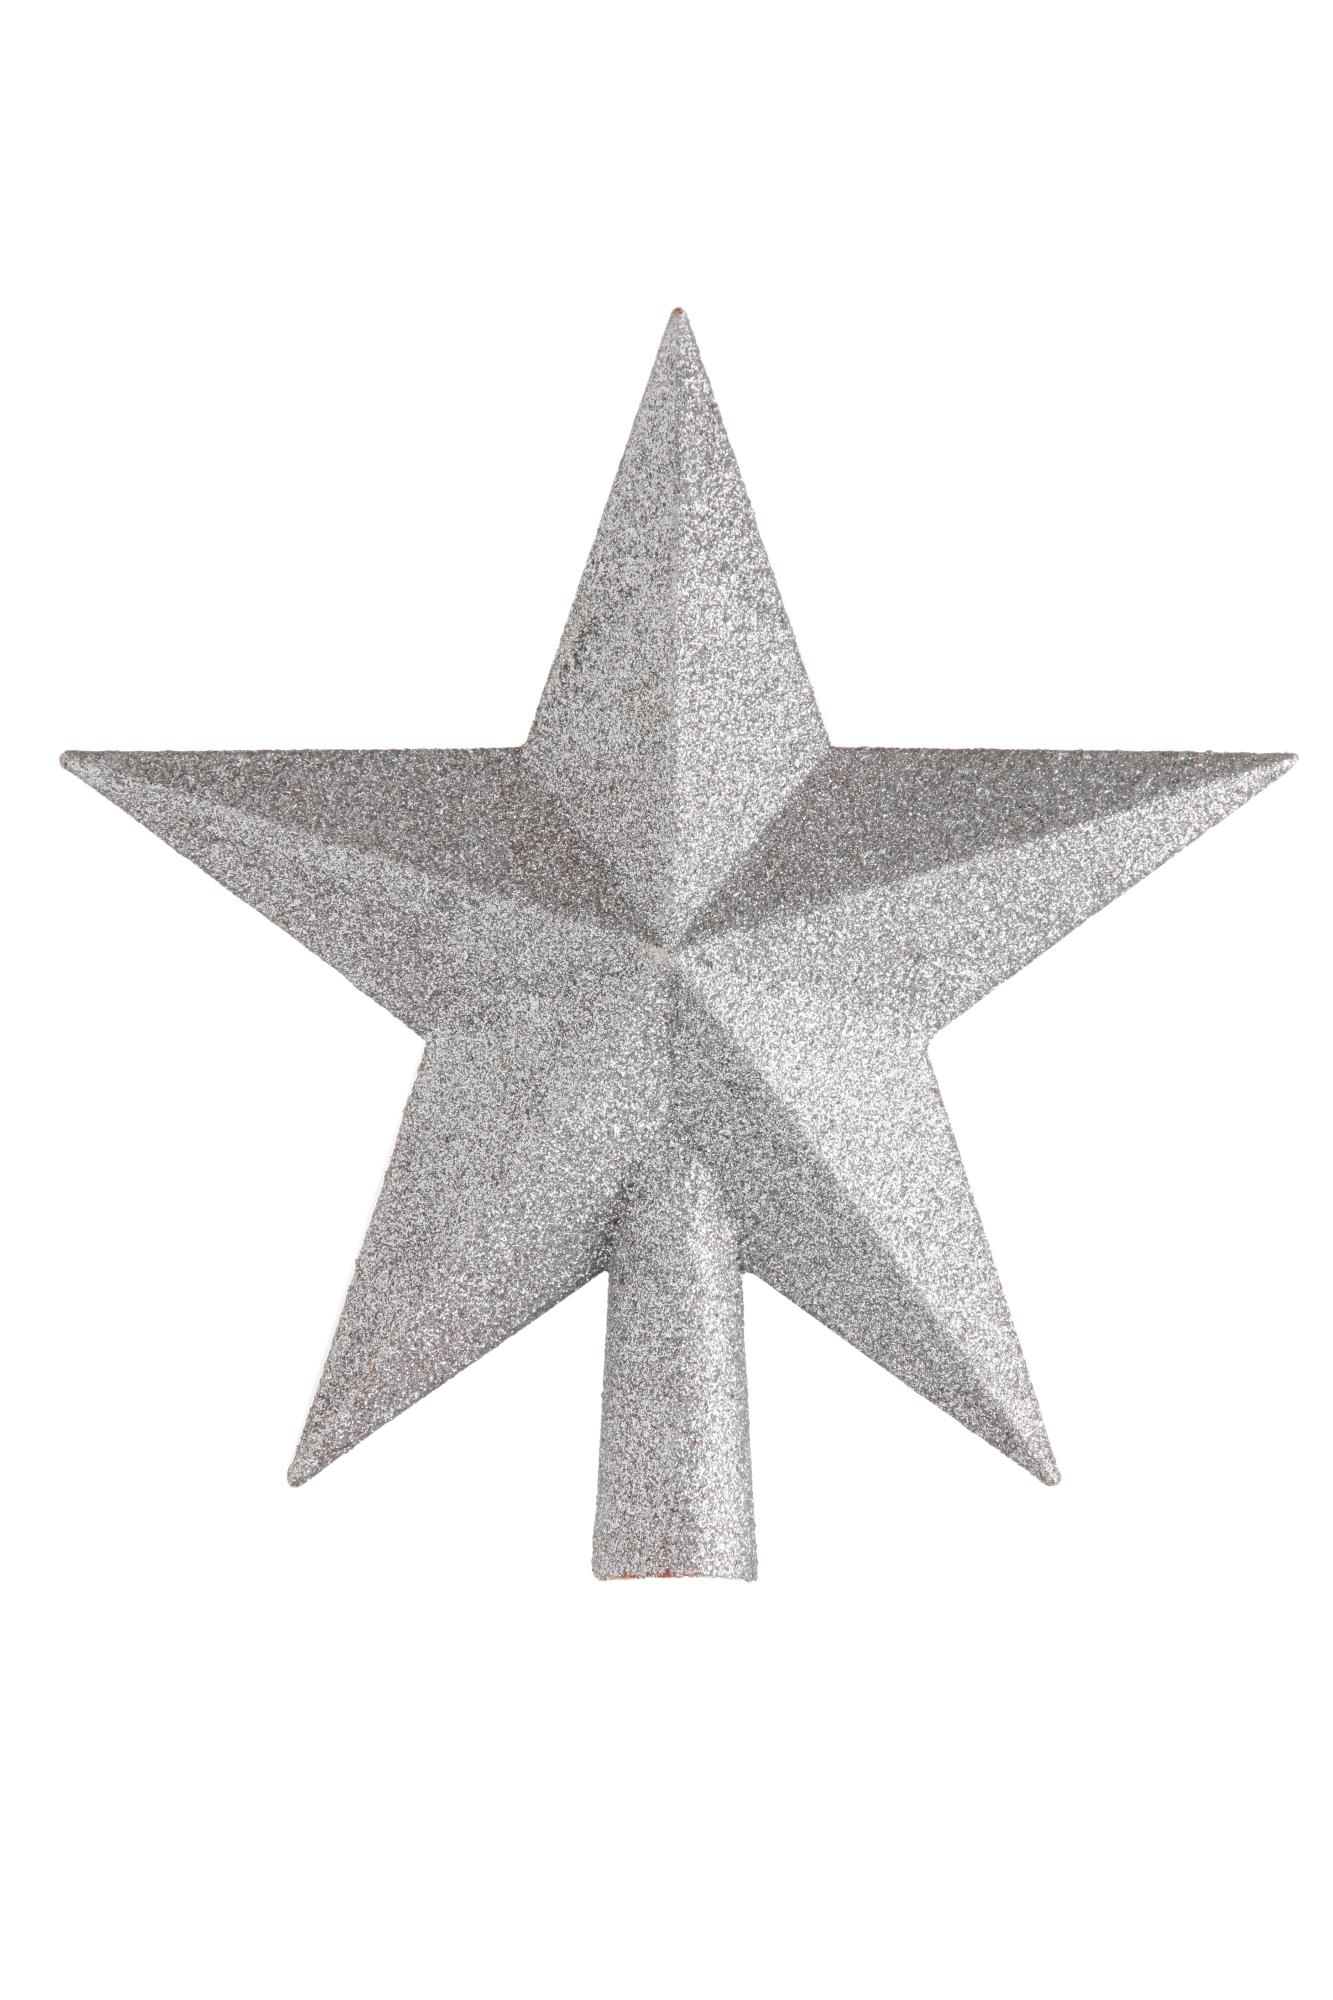 Adorno coronación árbol navidad estrella plateada 19 cm